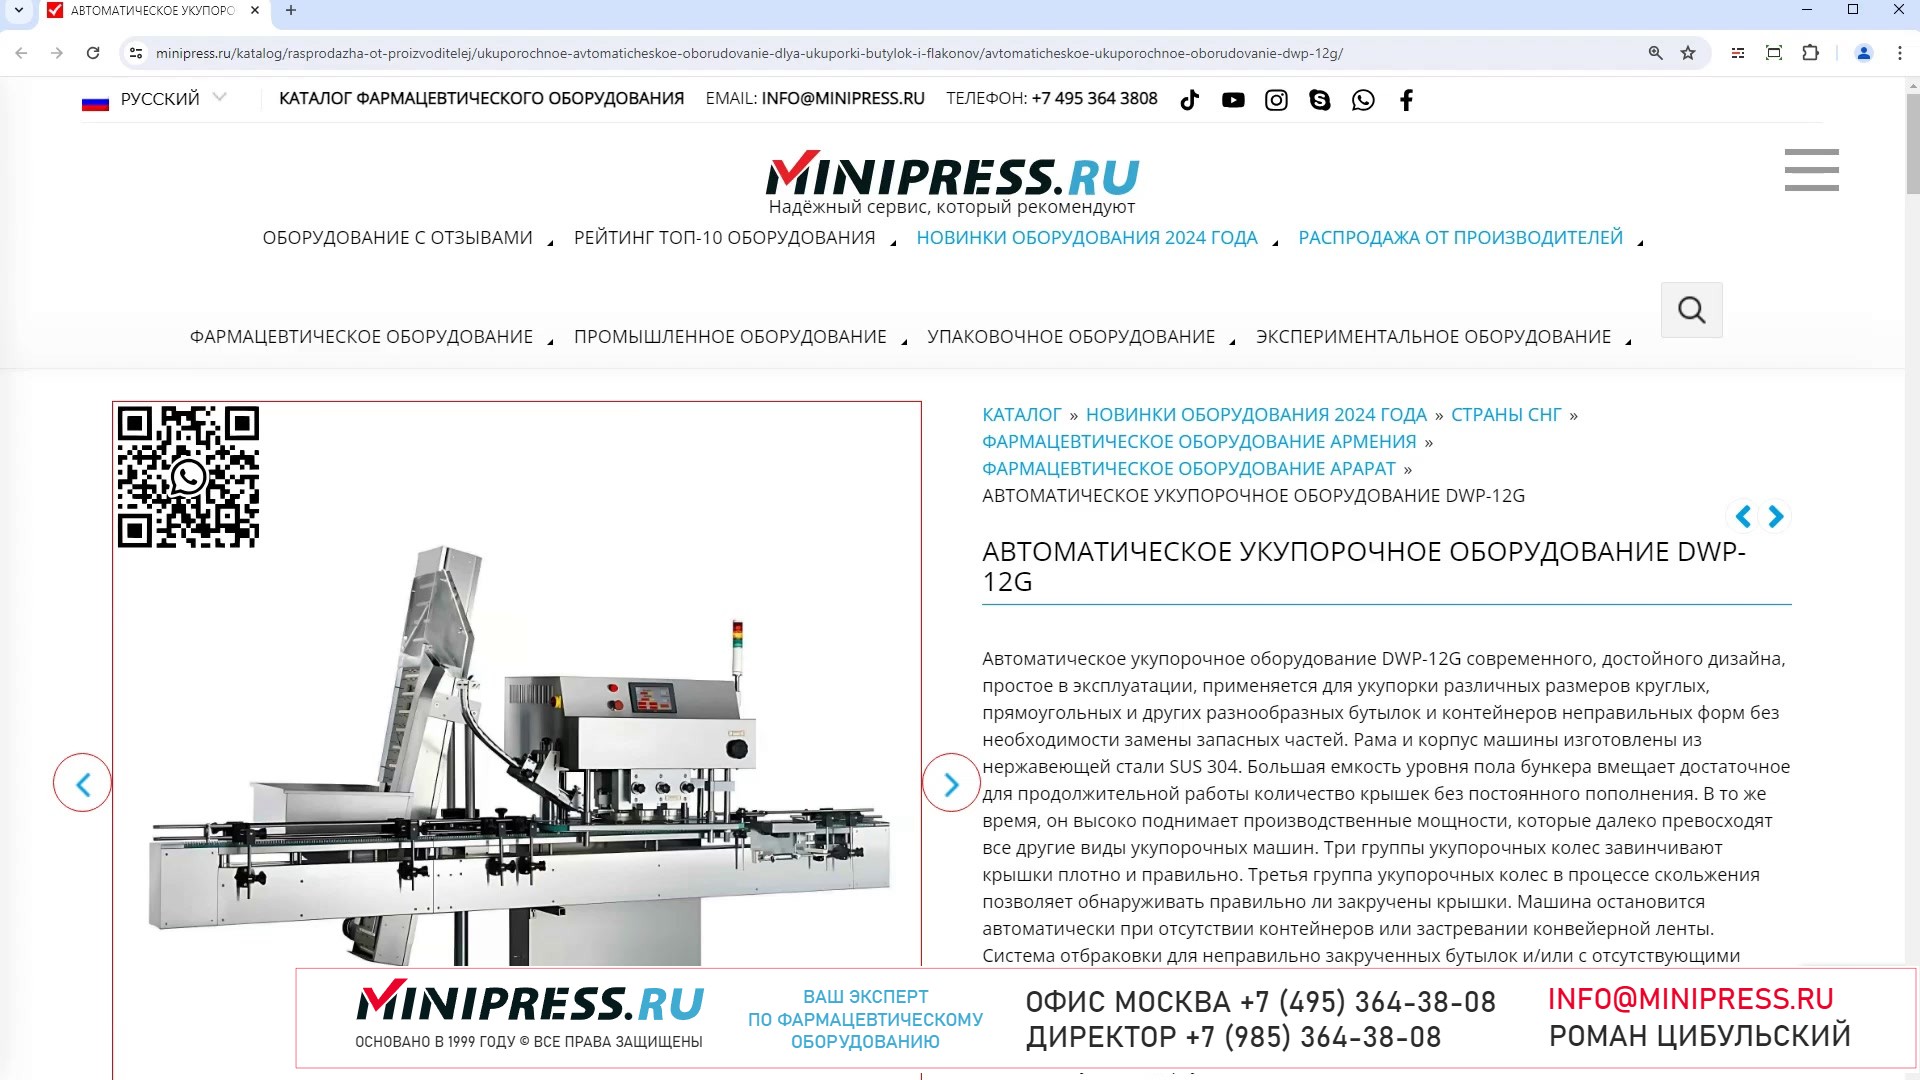 Minipress.ru Автоматическое укупорочное оборудование DWP-12G